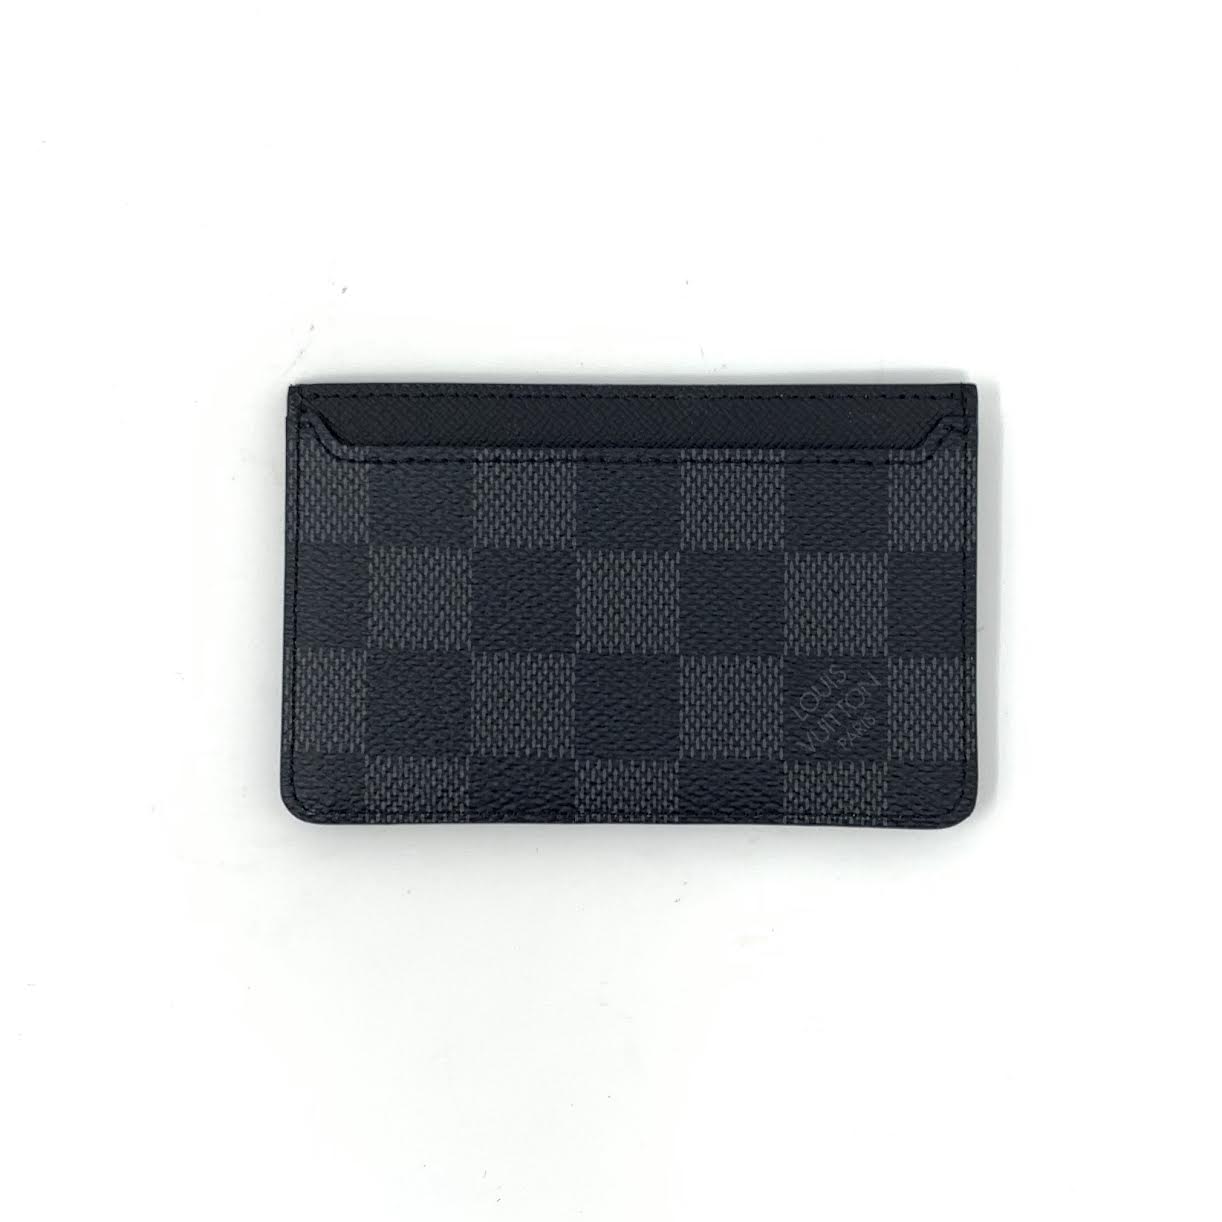 Louis Vuitton Neo Porte Cartes Cardholder - Black Wallets